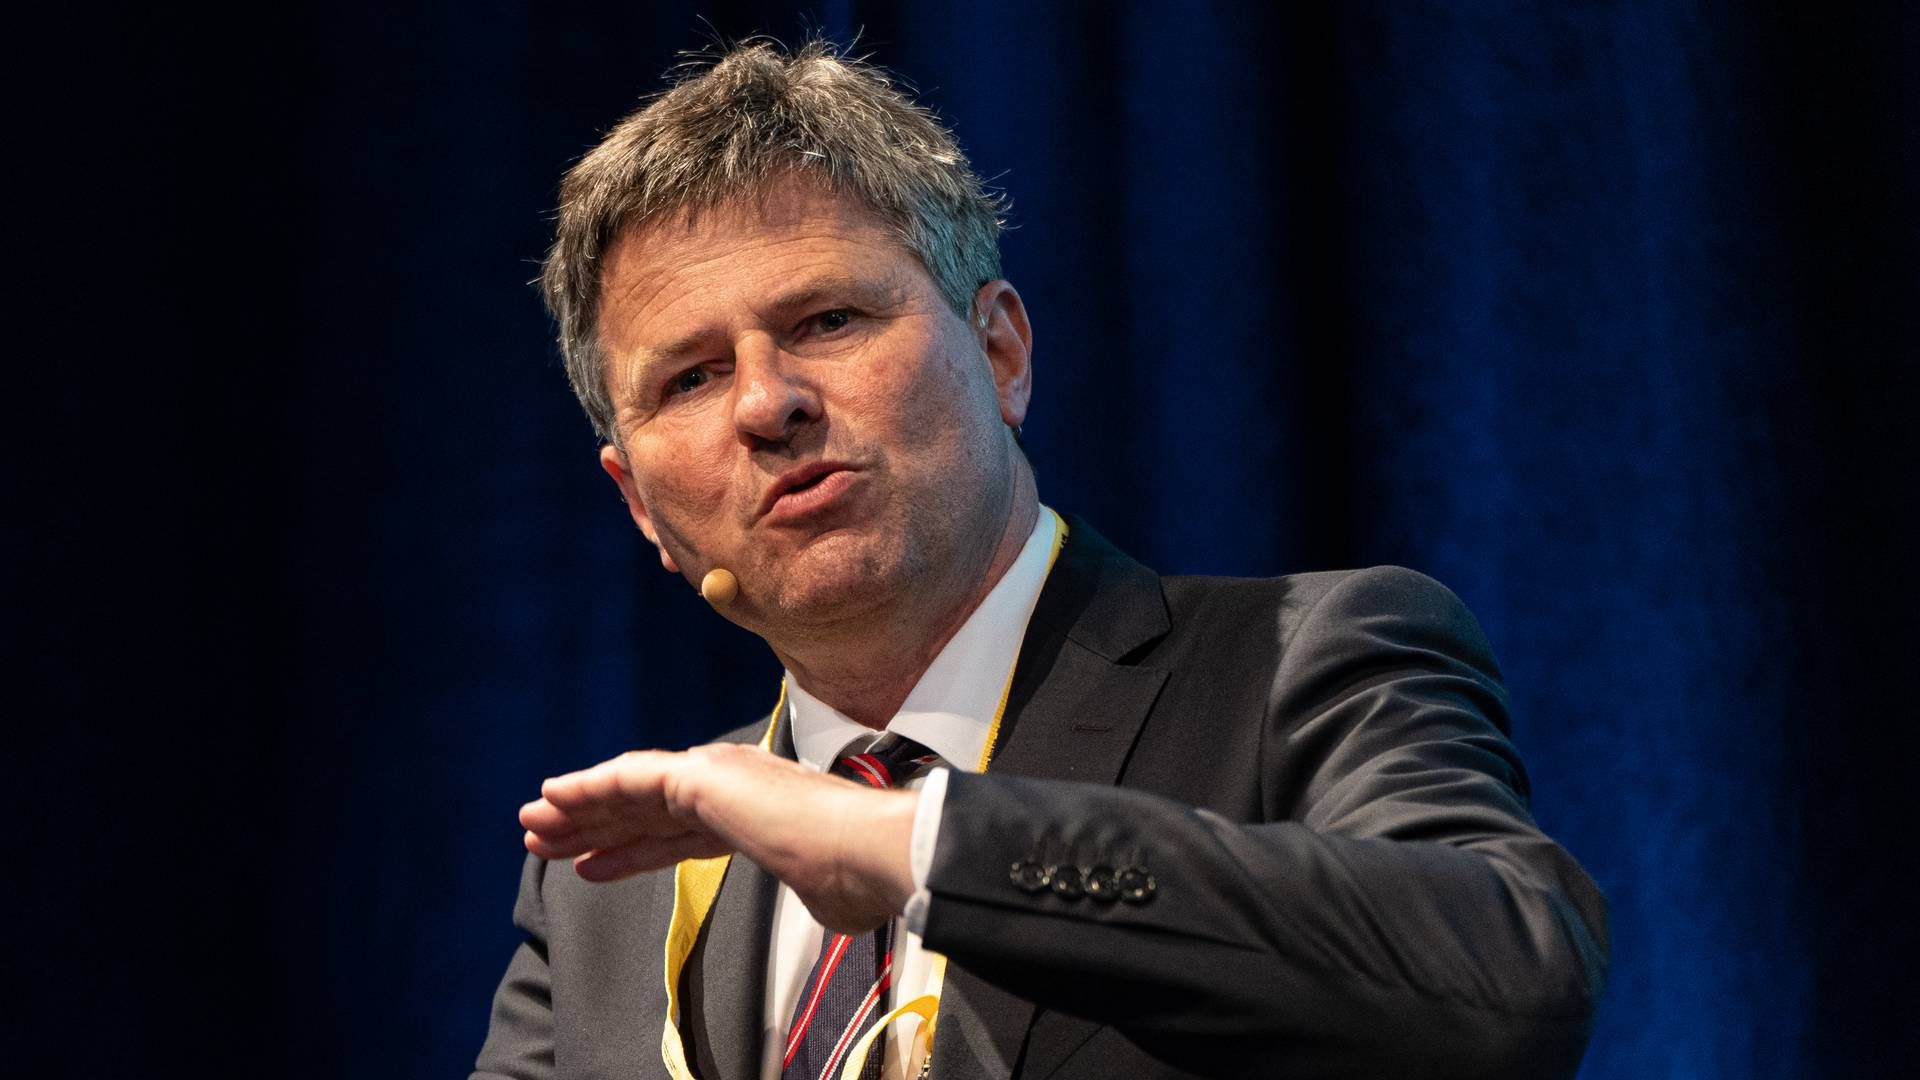 Finanstilsynets direktør, Jesper Berg. | Foto: Jan Bjarke Mindegaard / Watch Medier